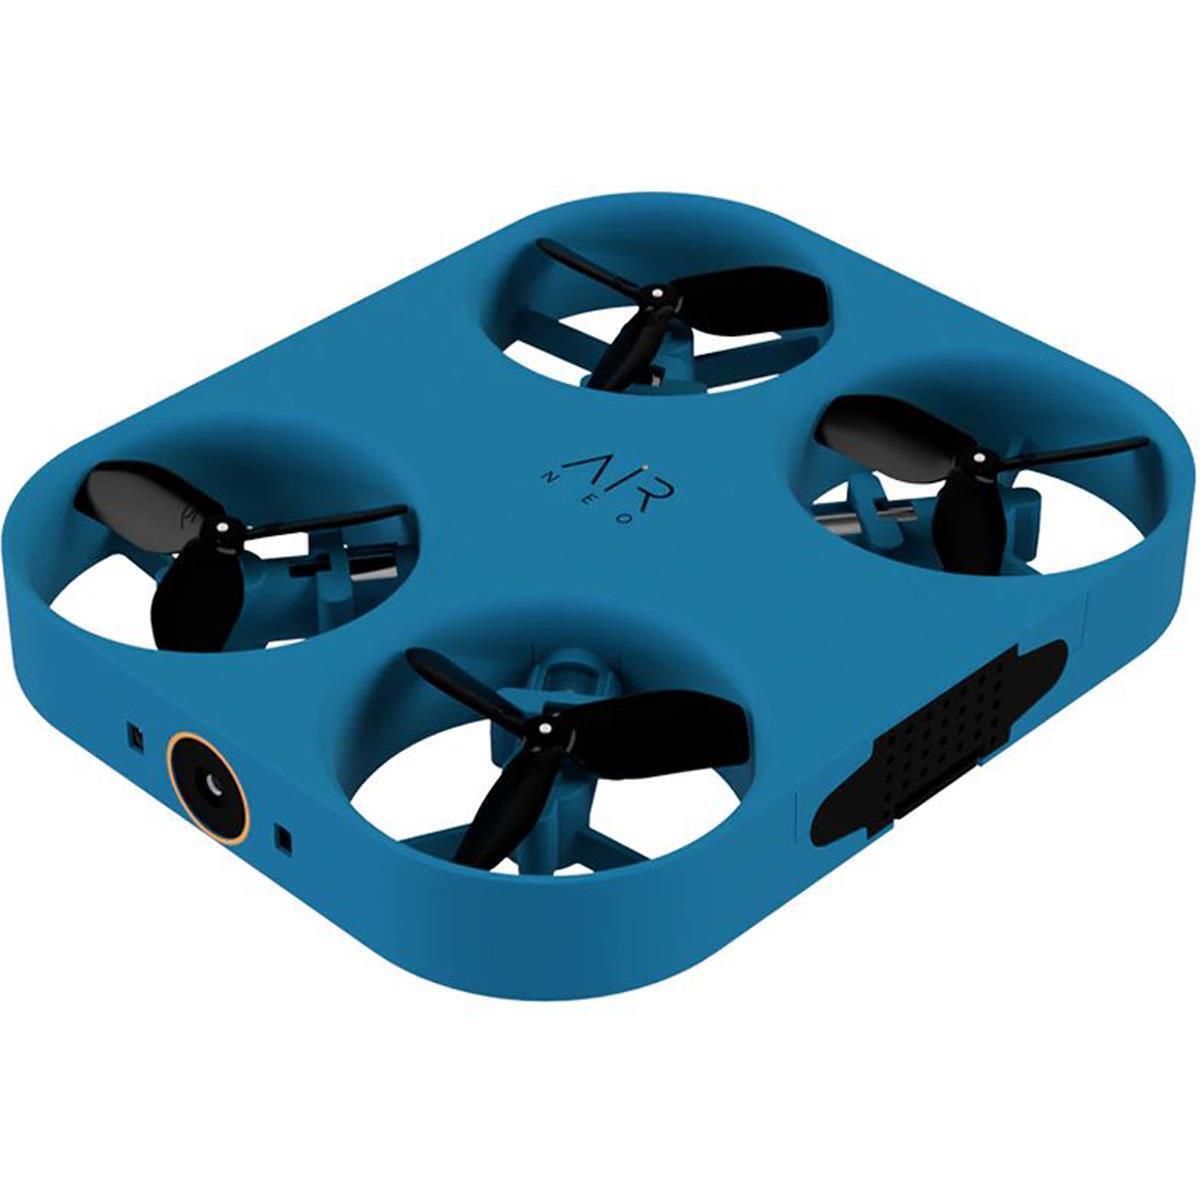 AirSelfie AIR NEO Selfie Pocket Drone, #90000201